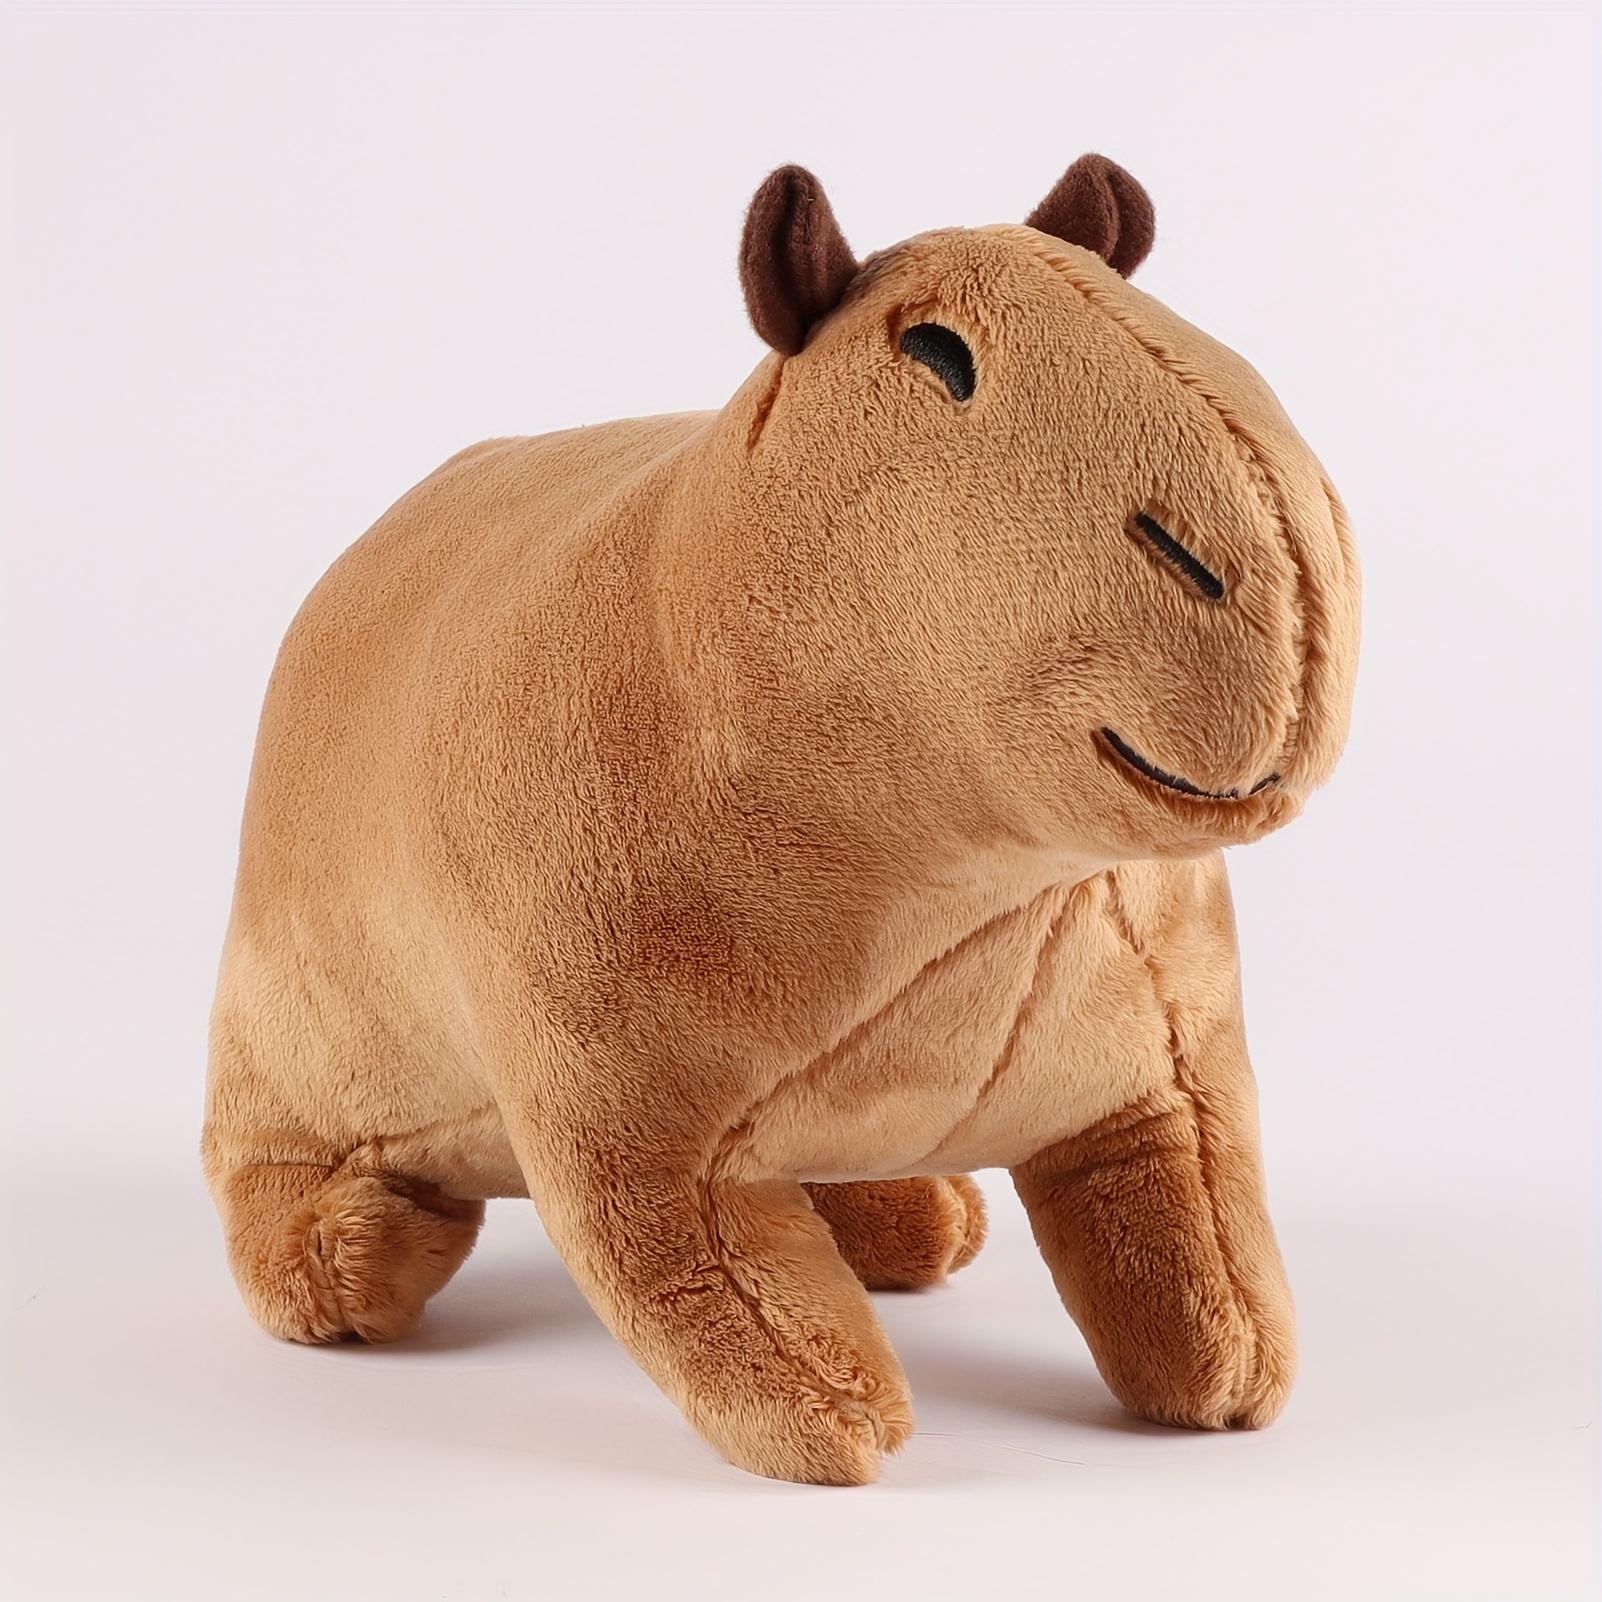 Acheter Animals Capybara Plush Doll Simulation Capybara Stuffed